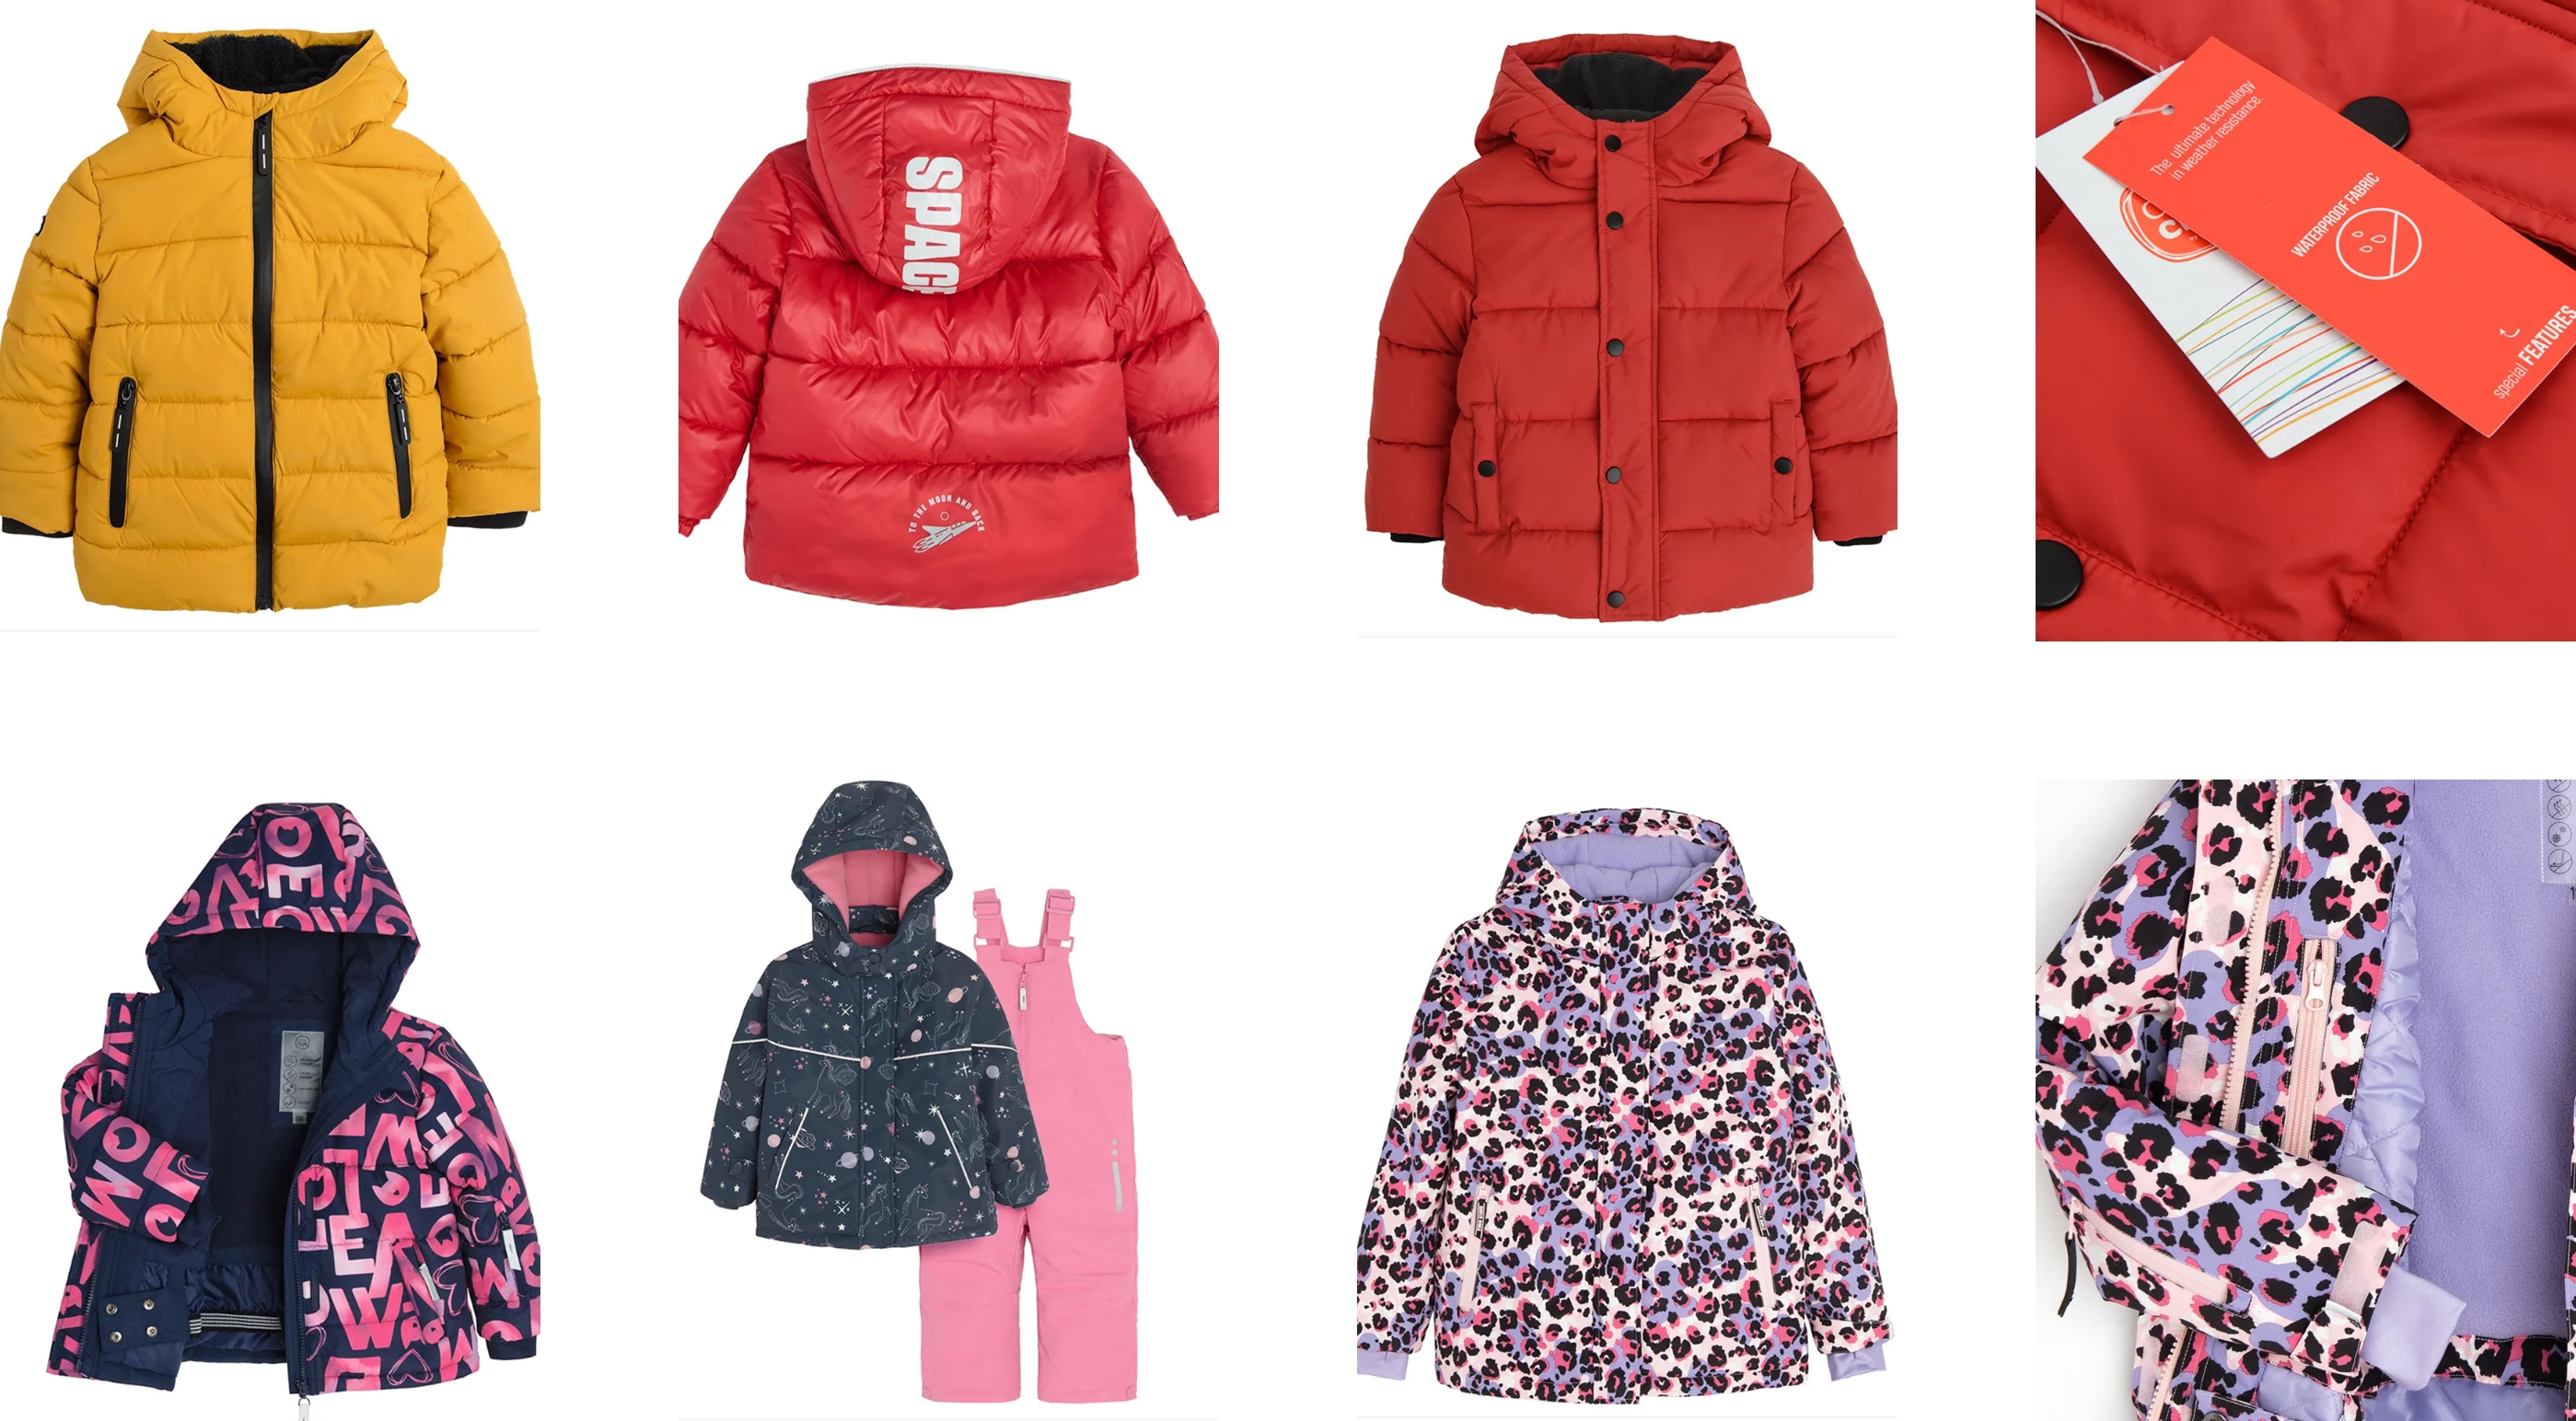 kurtki dla dzieci SMYK w soczystych kolorach - kurtki w intensywnych kolorach - kolorowe narciarskie kurtki dla dzieci SMYK